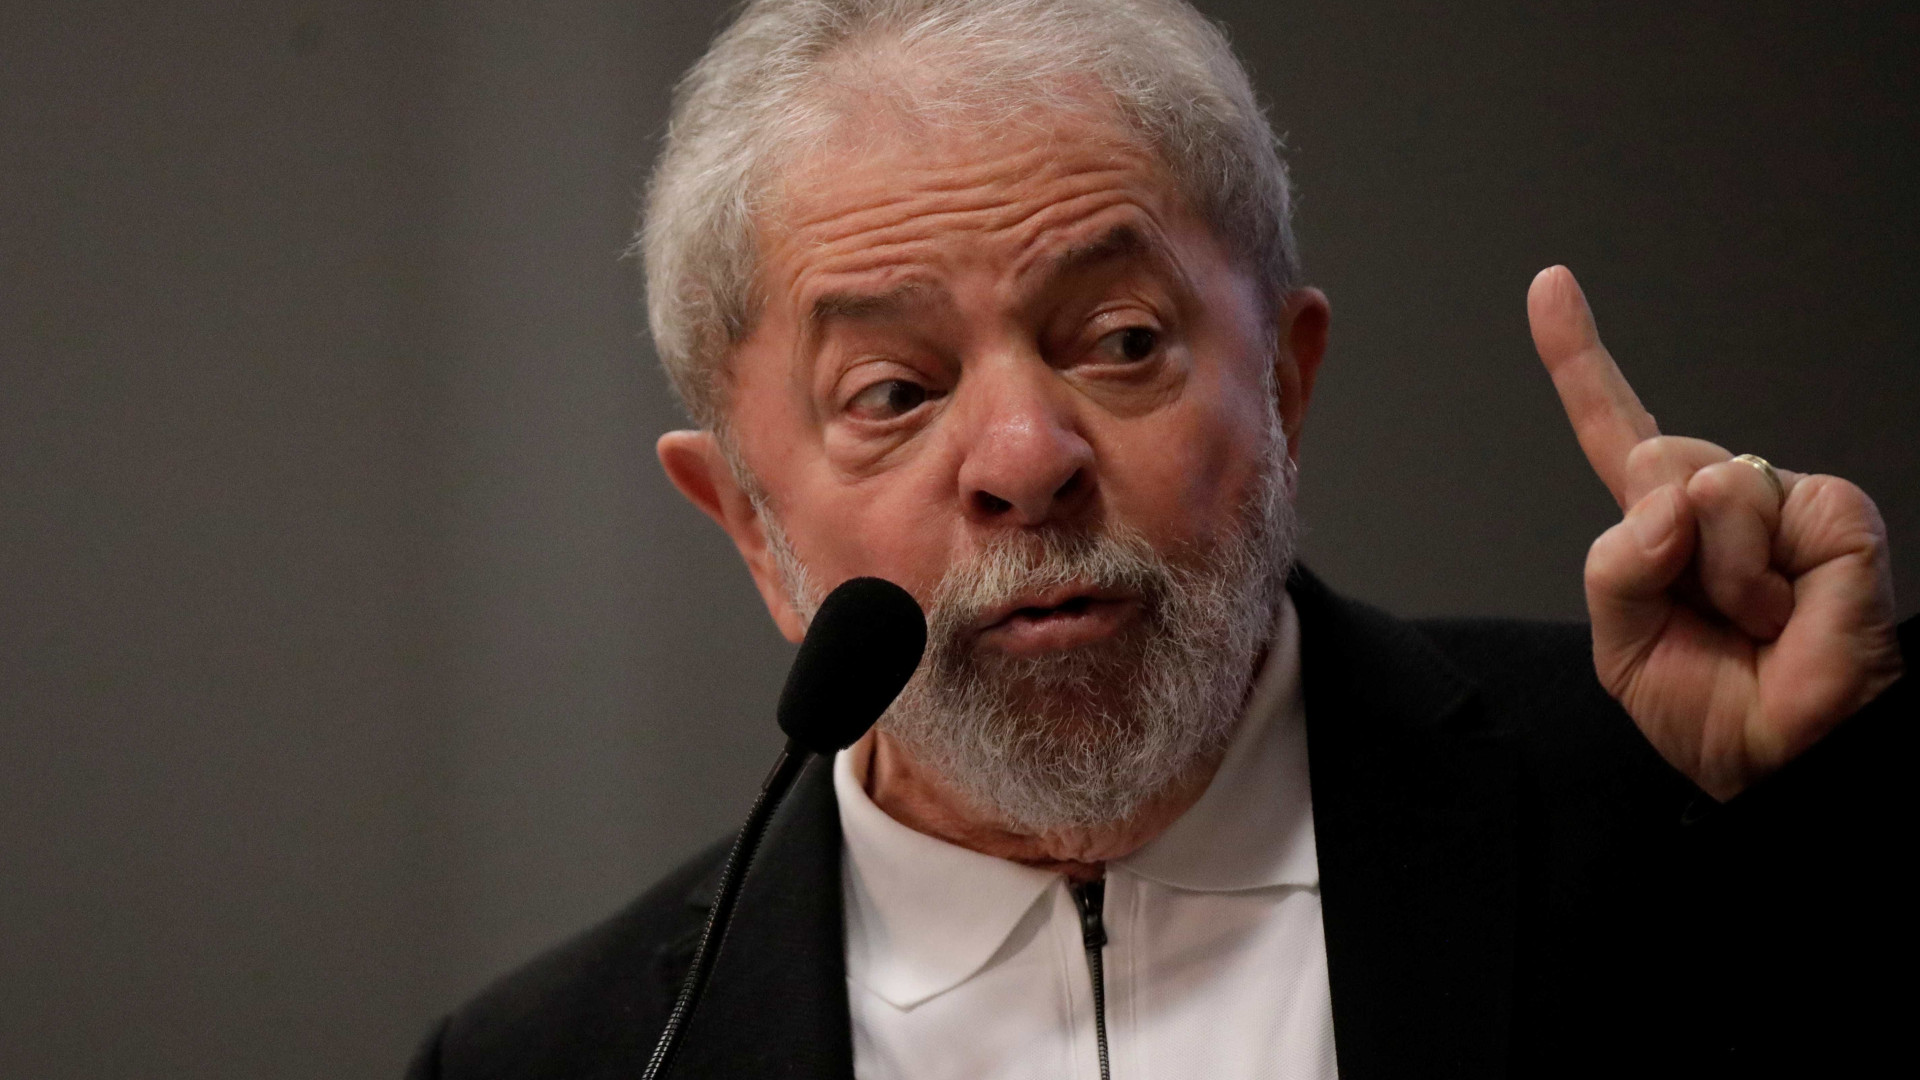 Em propaganda, PT diz que tentam impedir candidatura de Lula em 2018